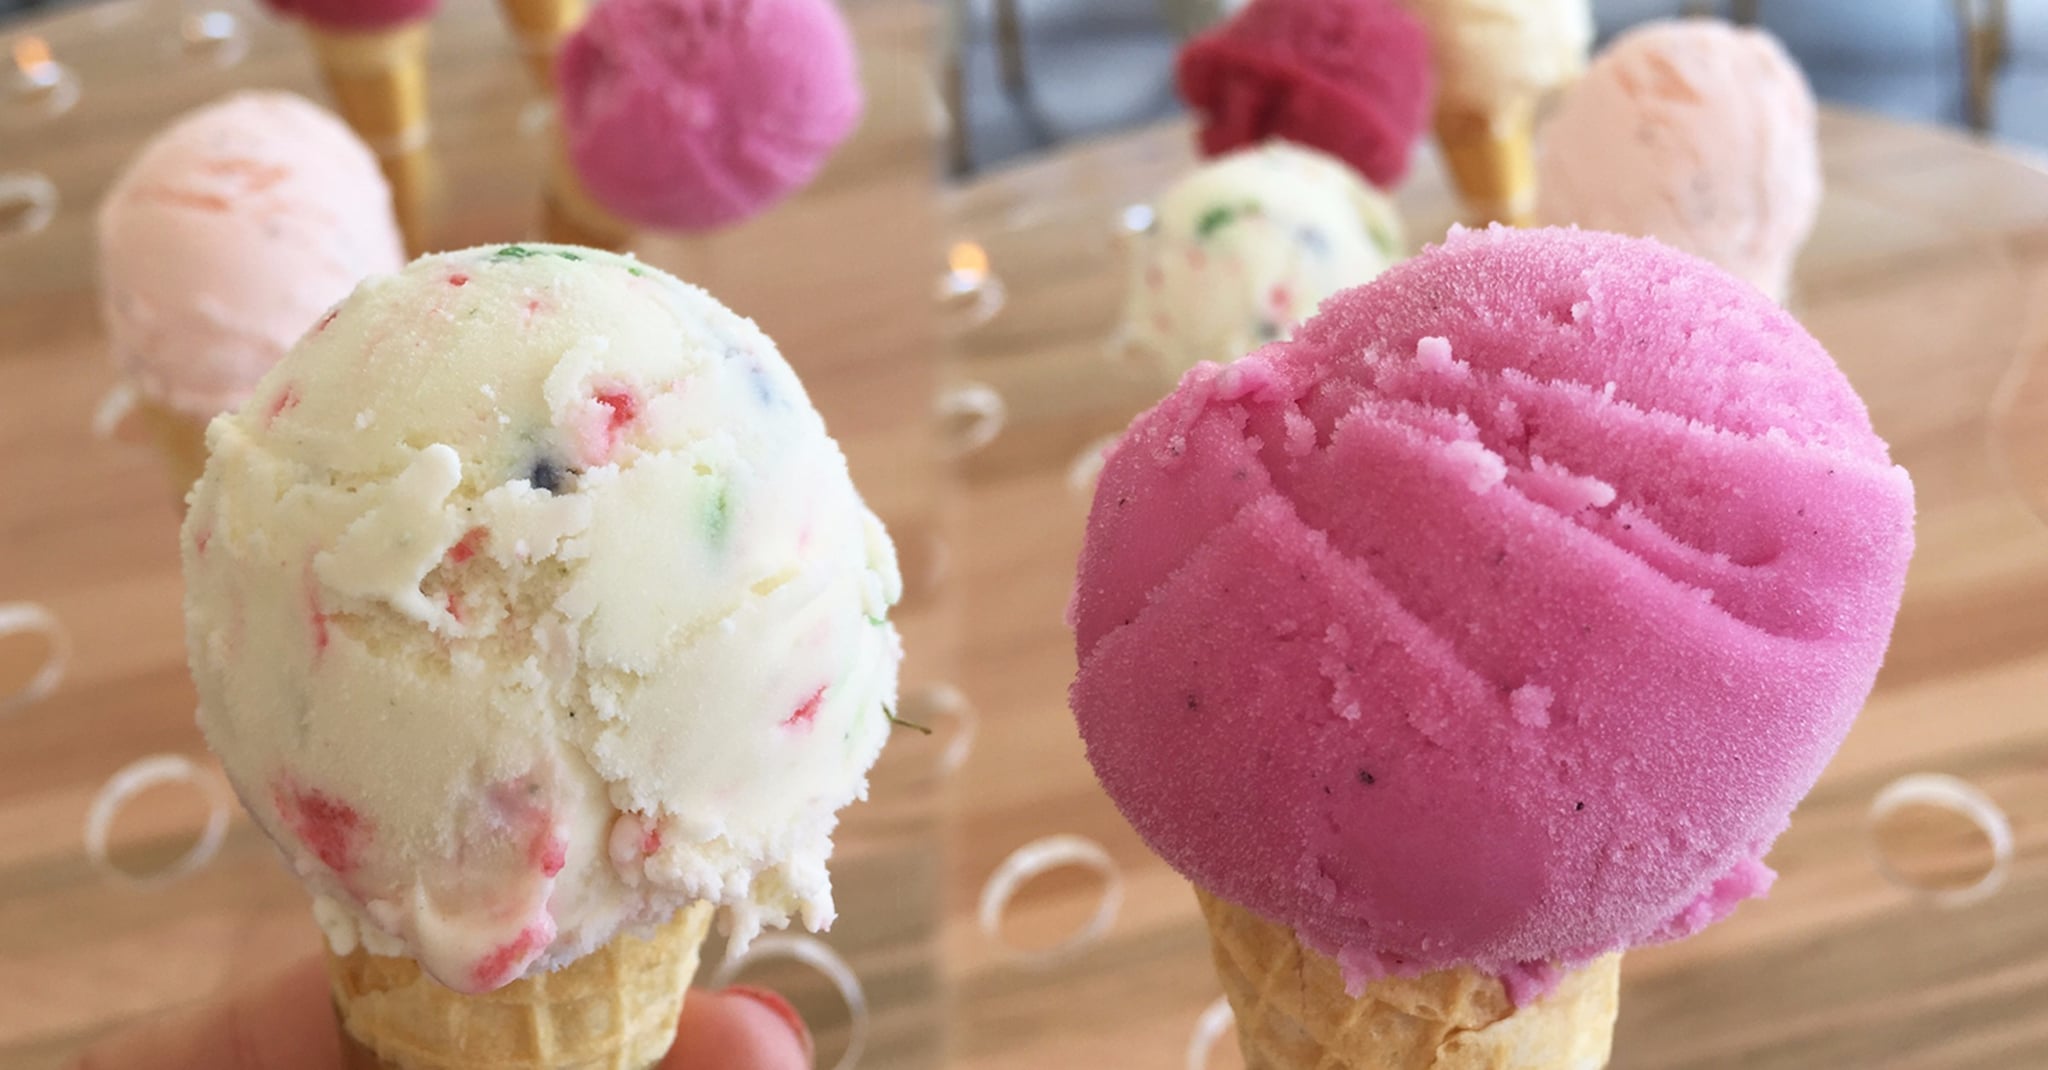 Game Of Thrones Ice Cream Flavors Popsugar Food